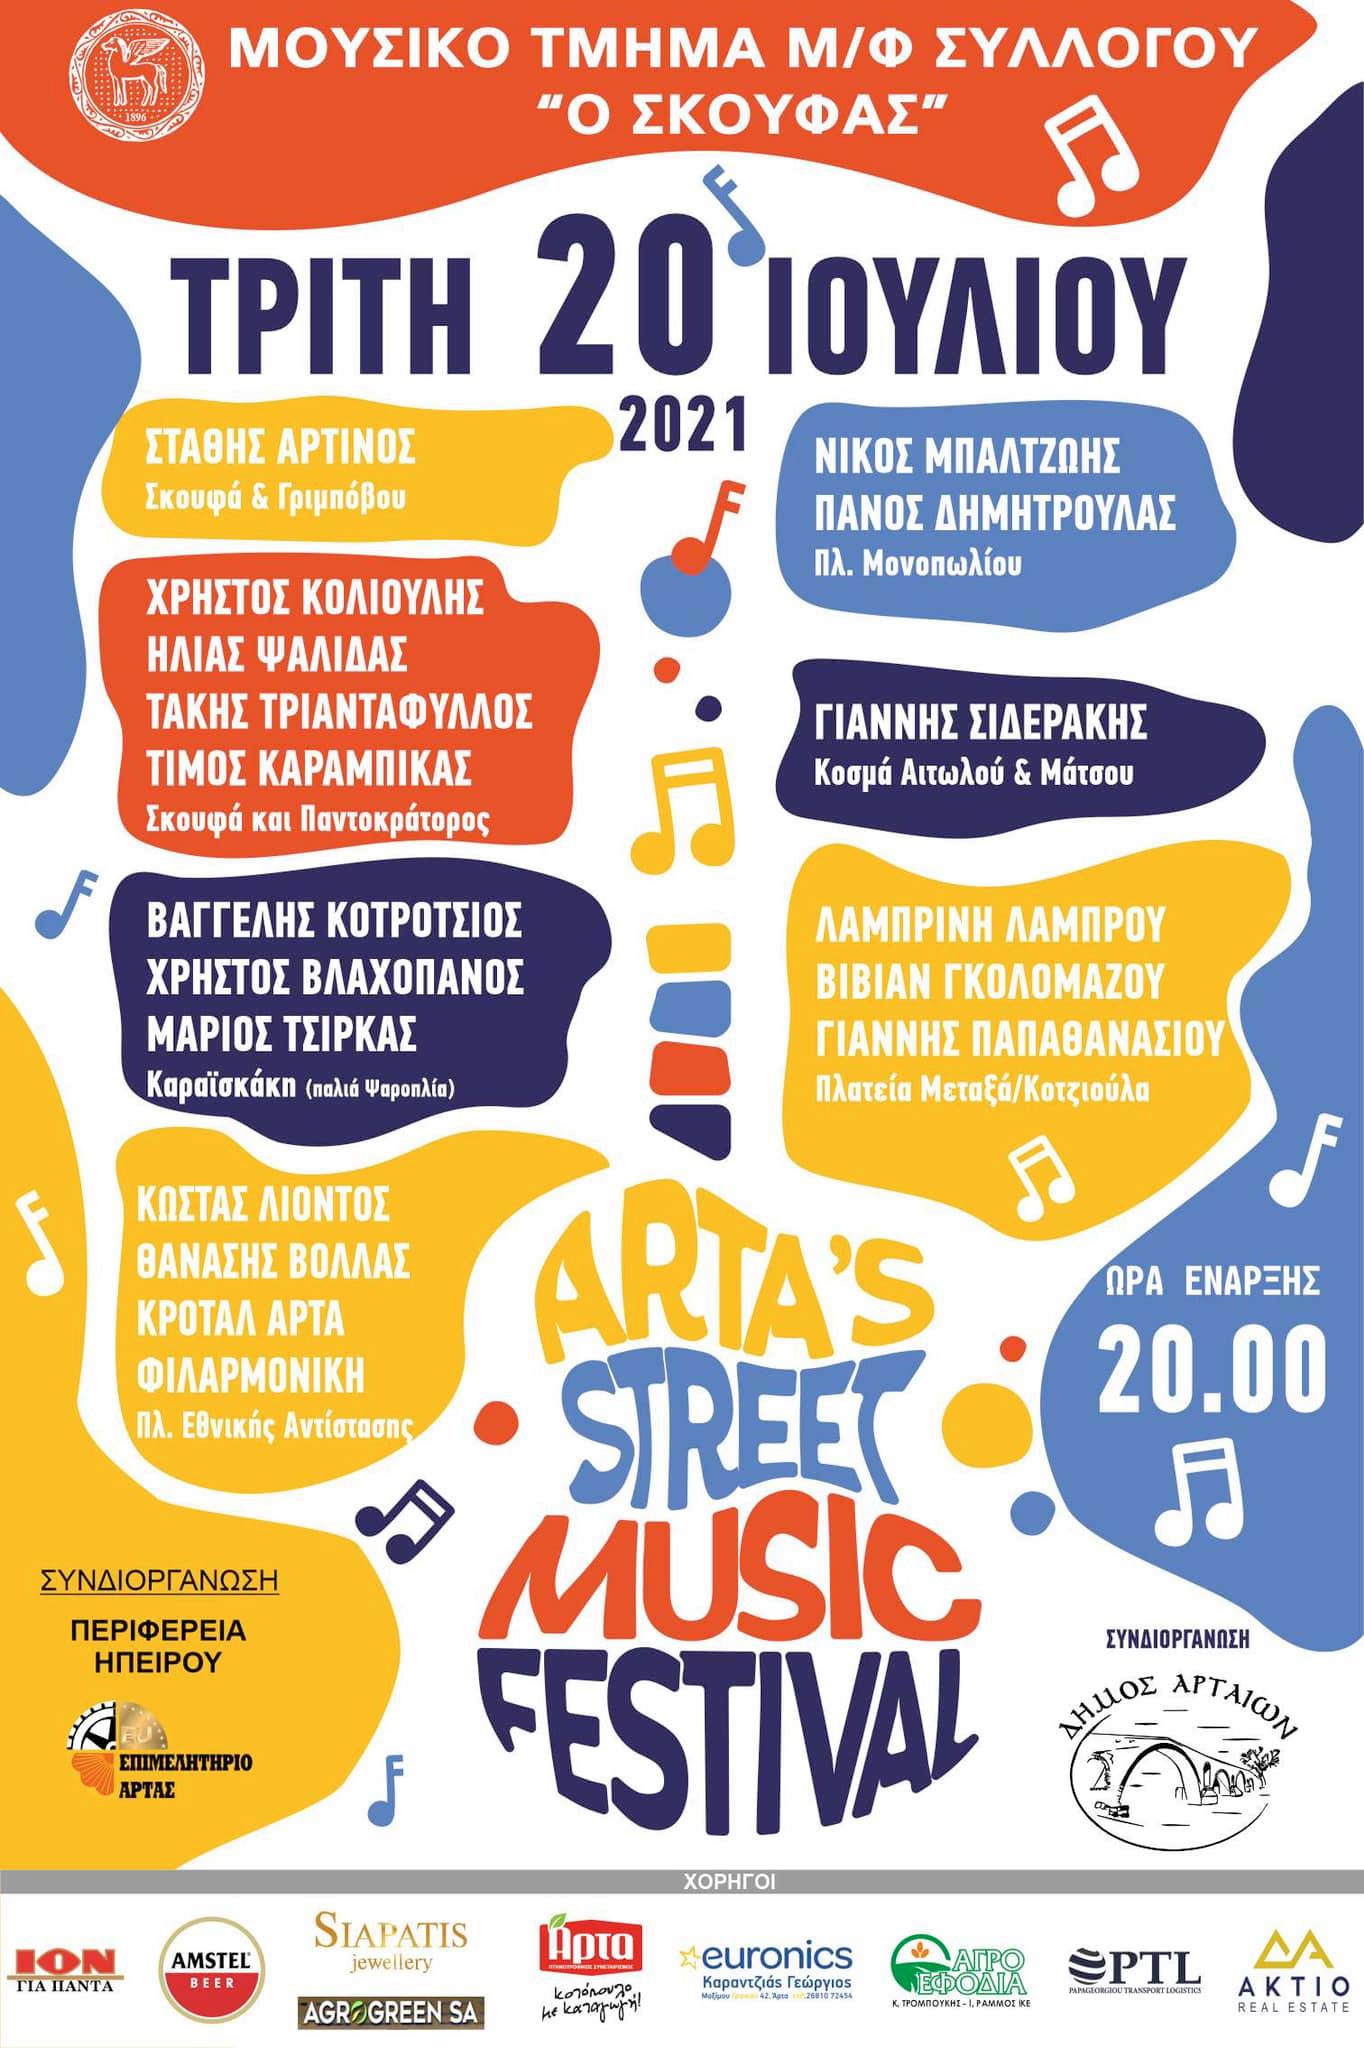 Μουσικό φεστιβάλ στην πόλη της Άρτας